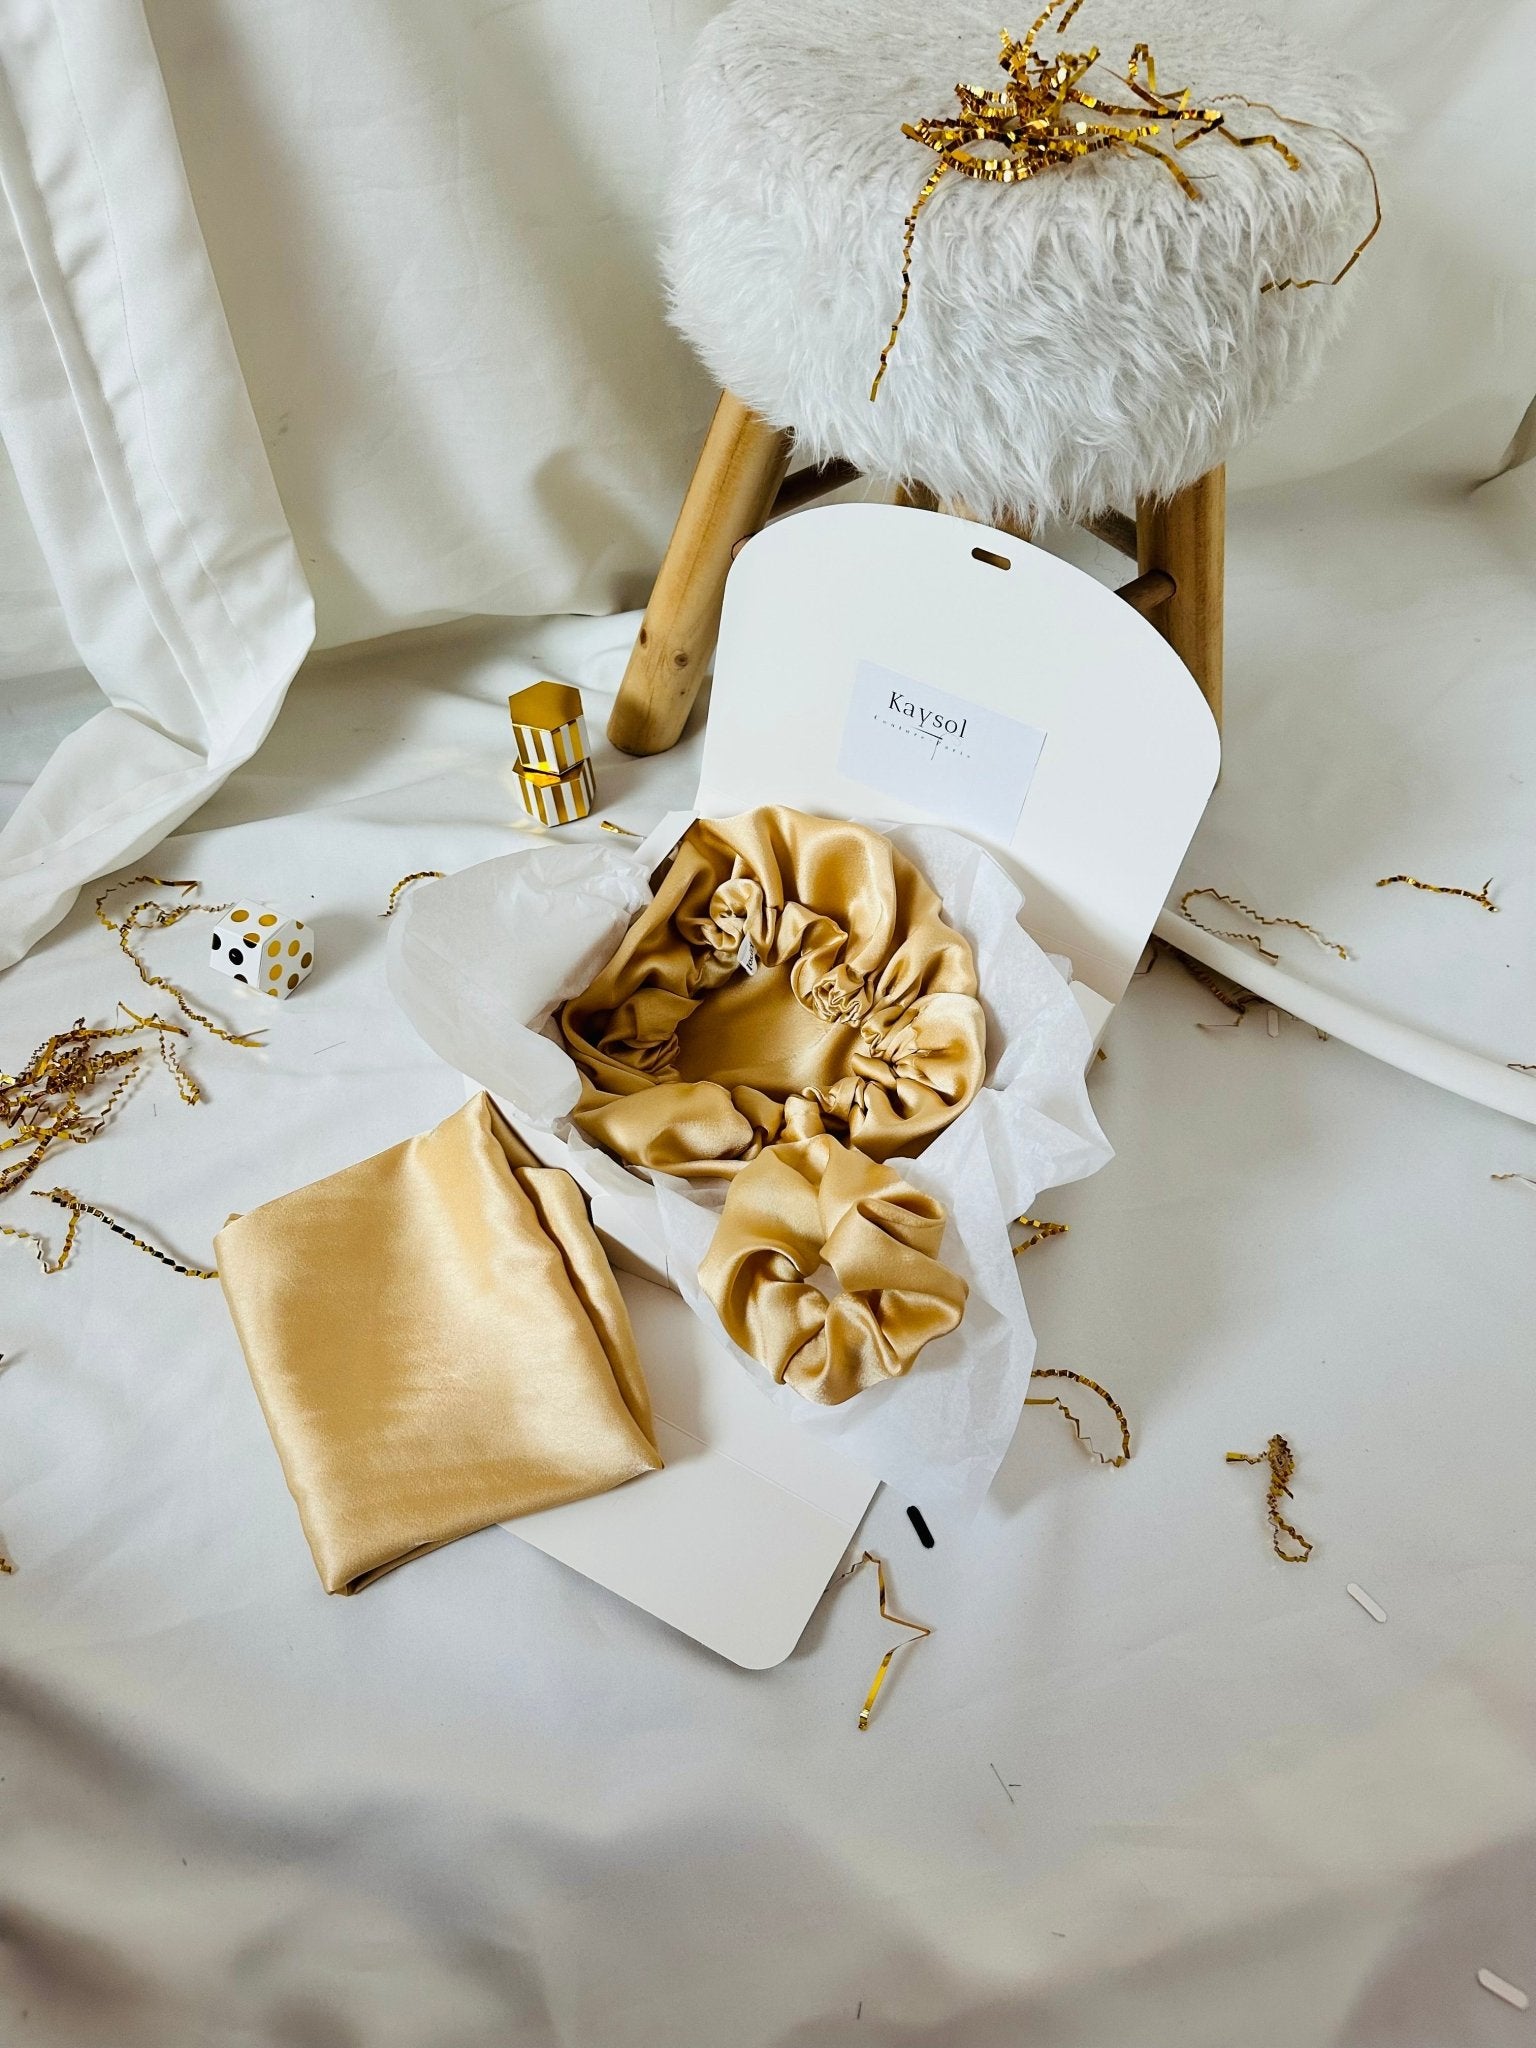 Box Soie Luxueux - avec Taie d'oreiller en Soie - Bonnet en soie et Ch –  Kaysol Couture